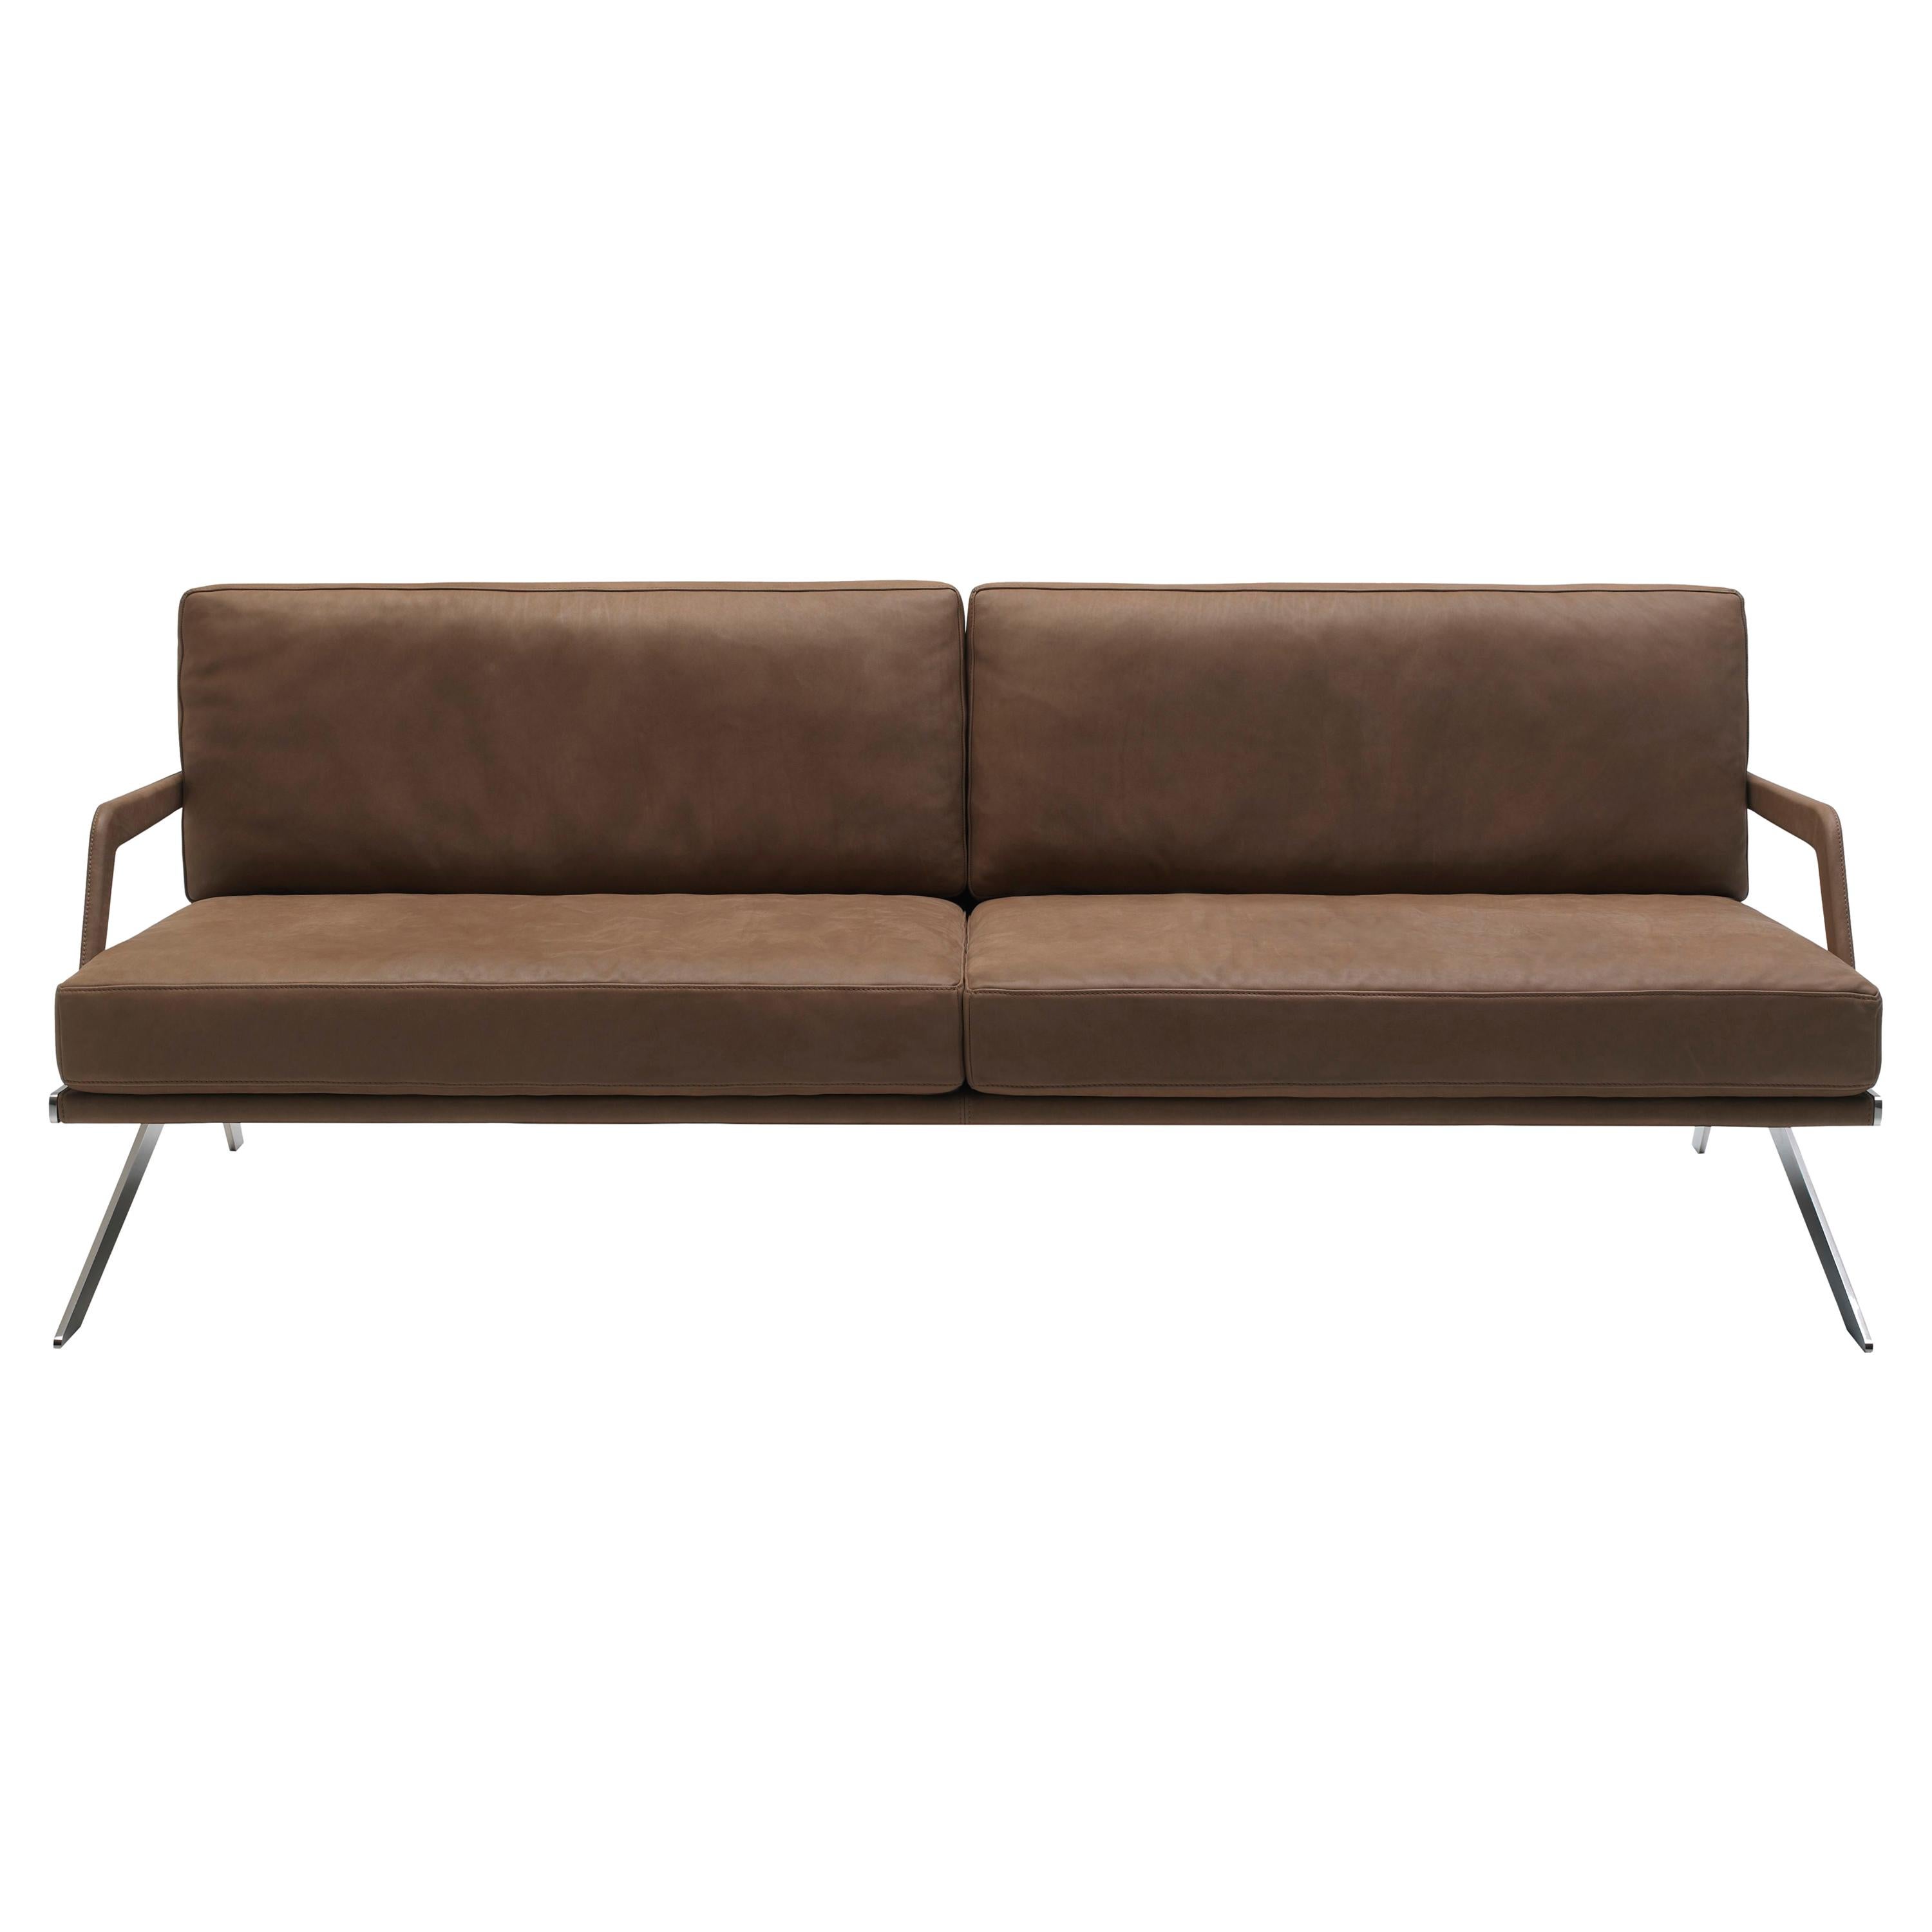 DS-60 Sofa by De Sede For Sale